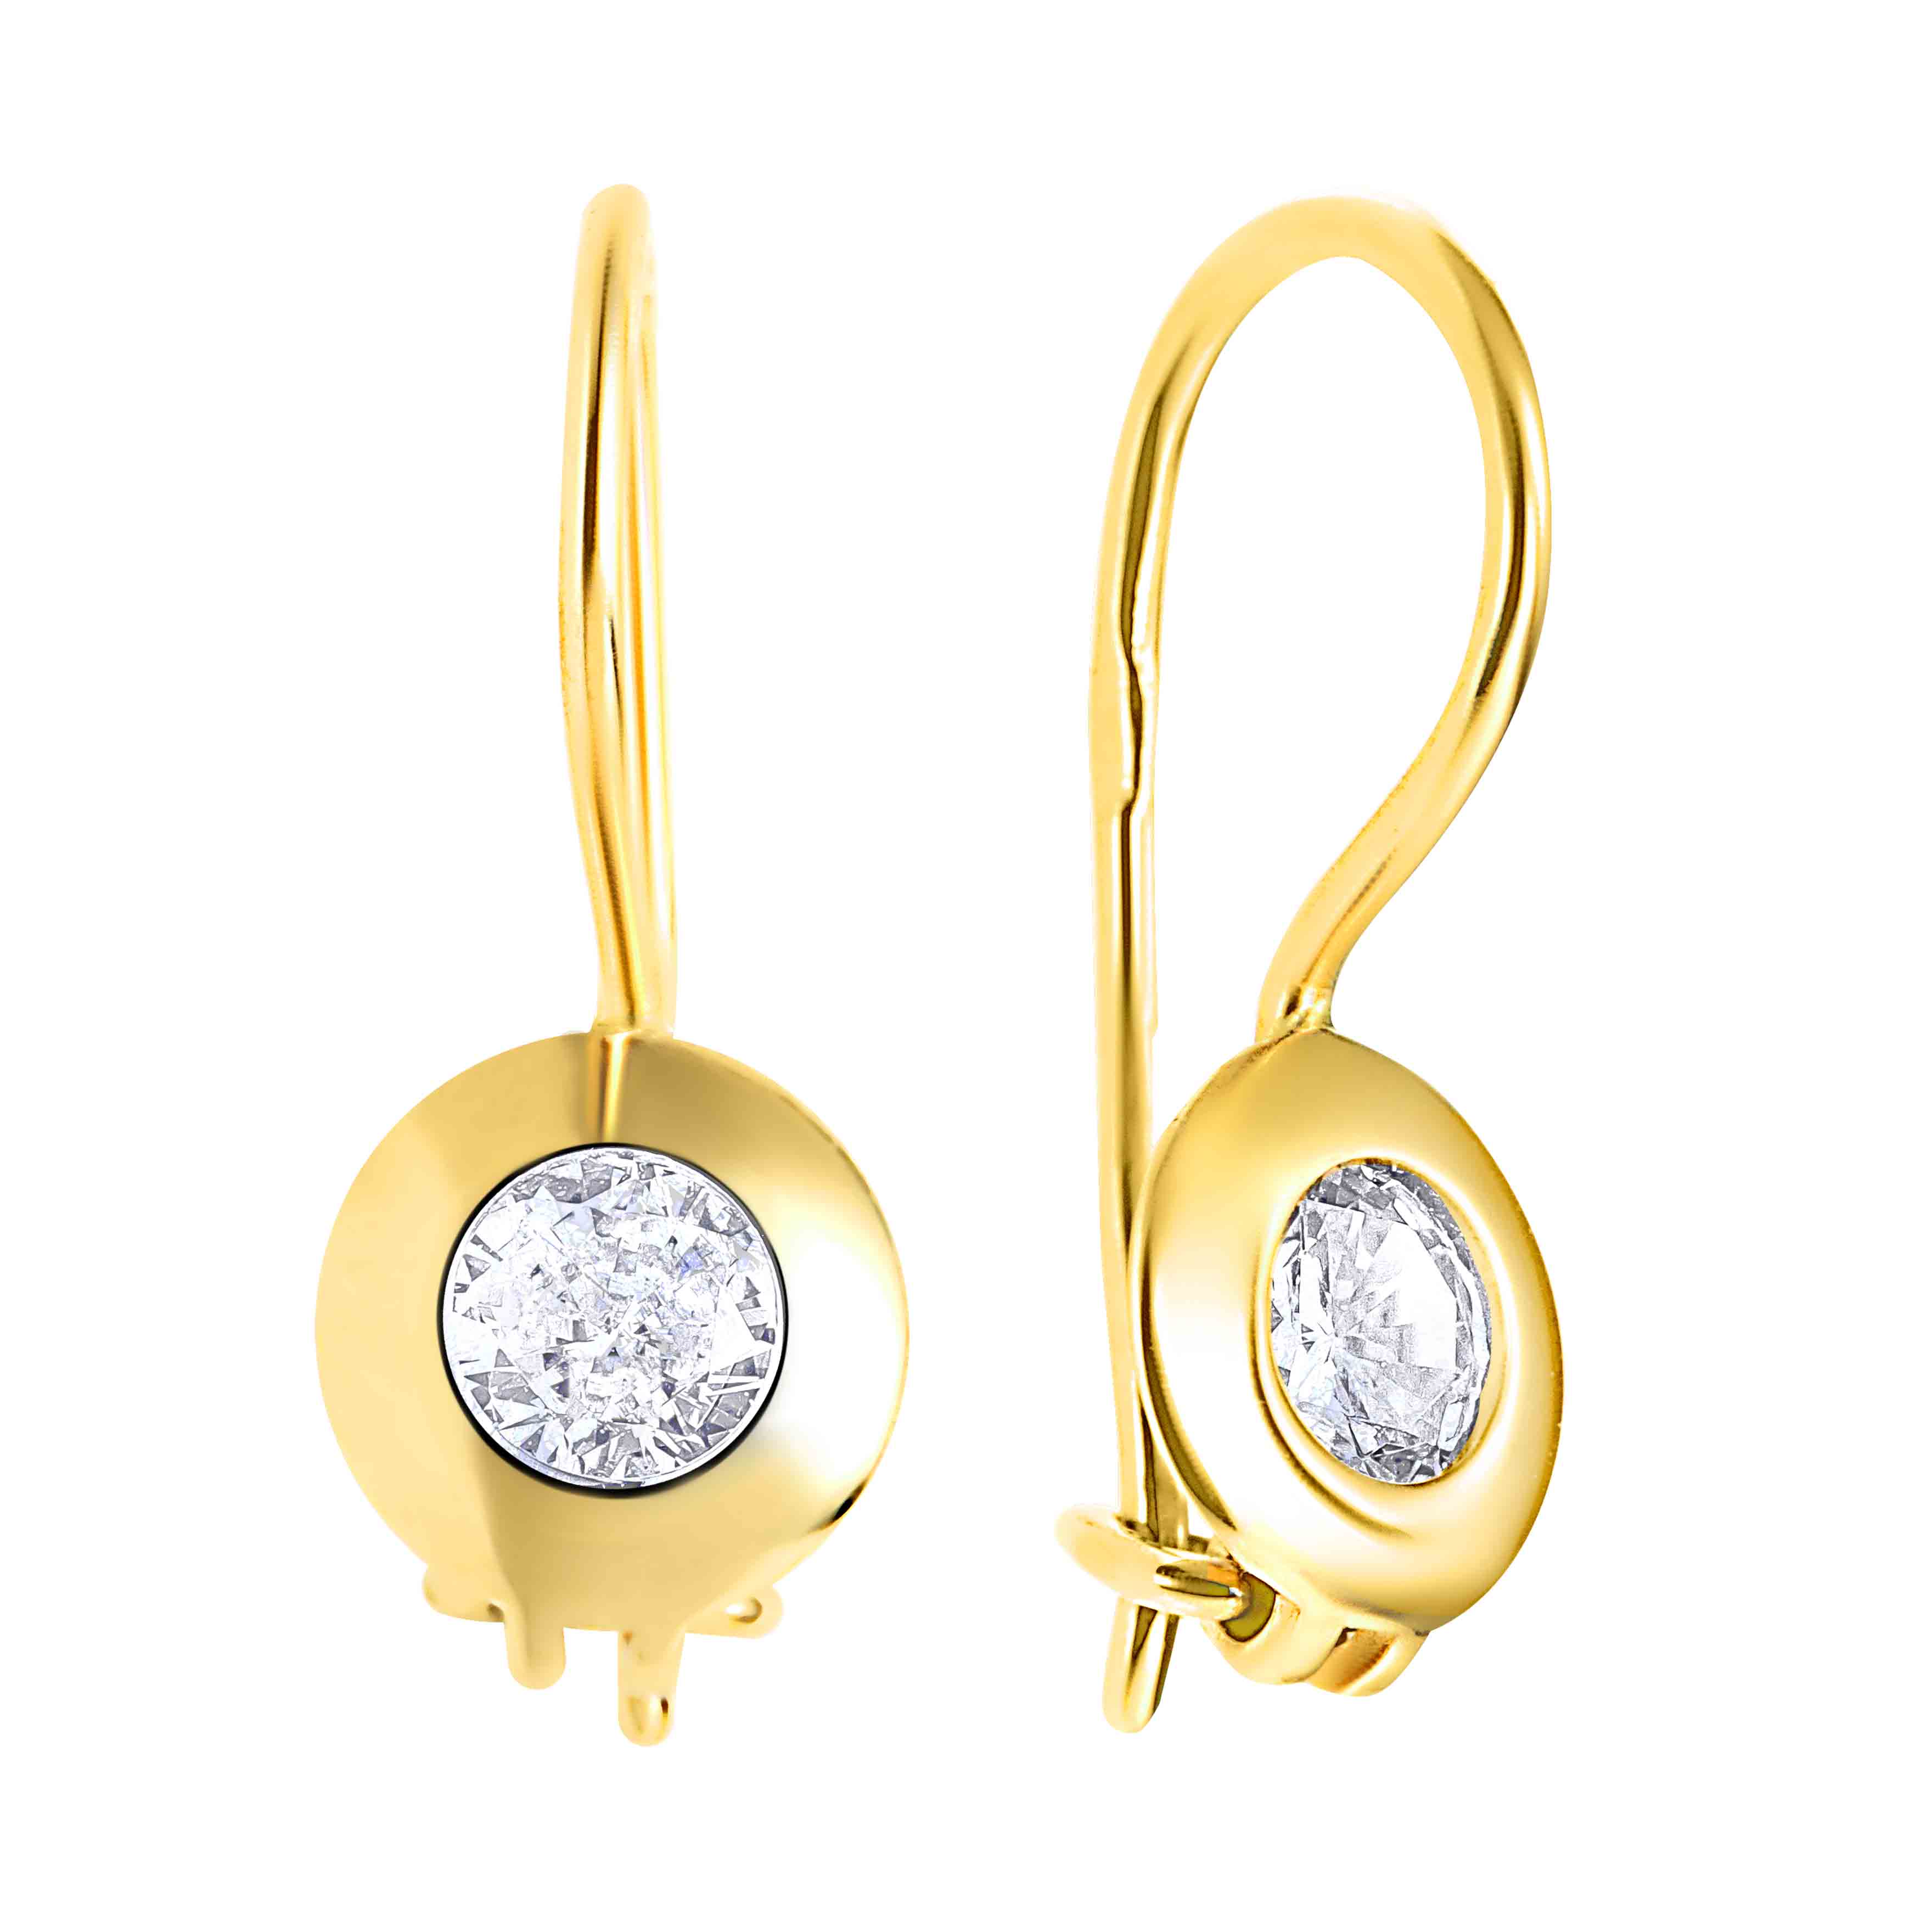 Buy Gold Cross Hoop Earring Endless Hoops Huggies Dangle Earring Simple  Earrings Everyday/gift for Her Online in India - Etsy